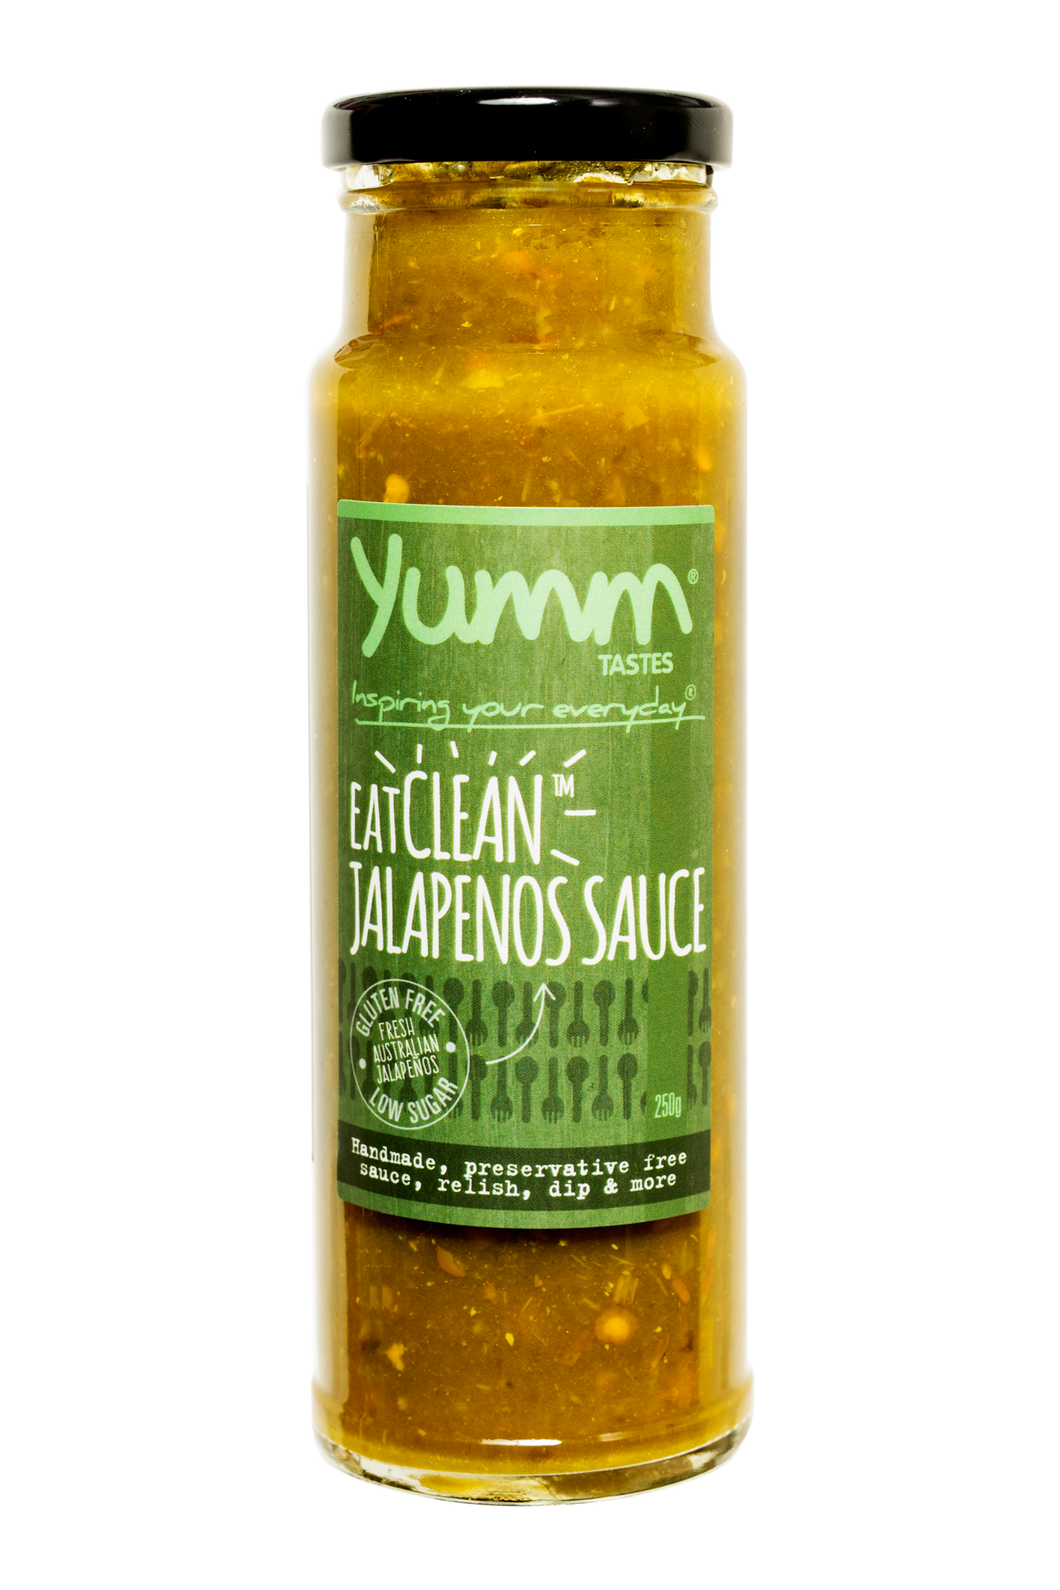 EatClean Jalapeños Sauce - yumm tastes